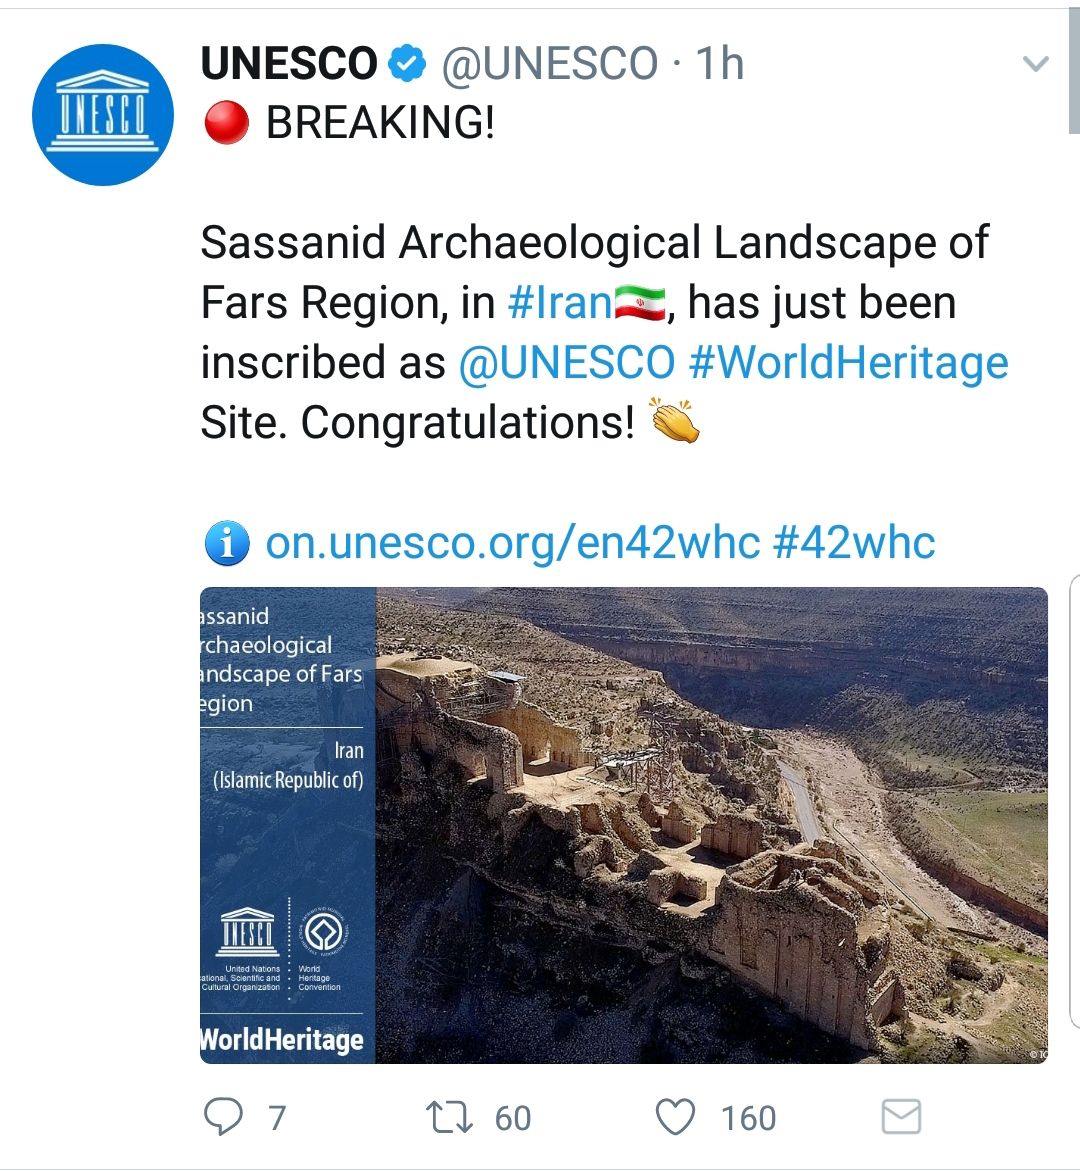 ثبت آثار تاریخی ساسانی فیروز آباد و بیشاپور به عنوان میراث جهانی در چهل و دومین همایش جهانی یونسکو